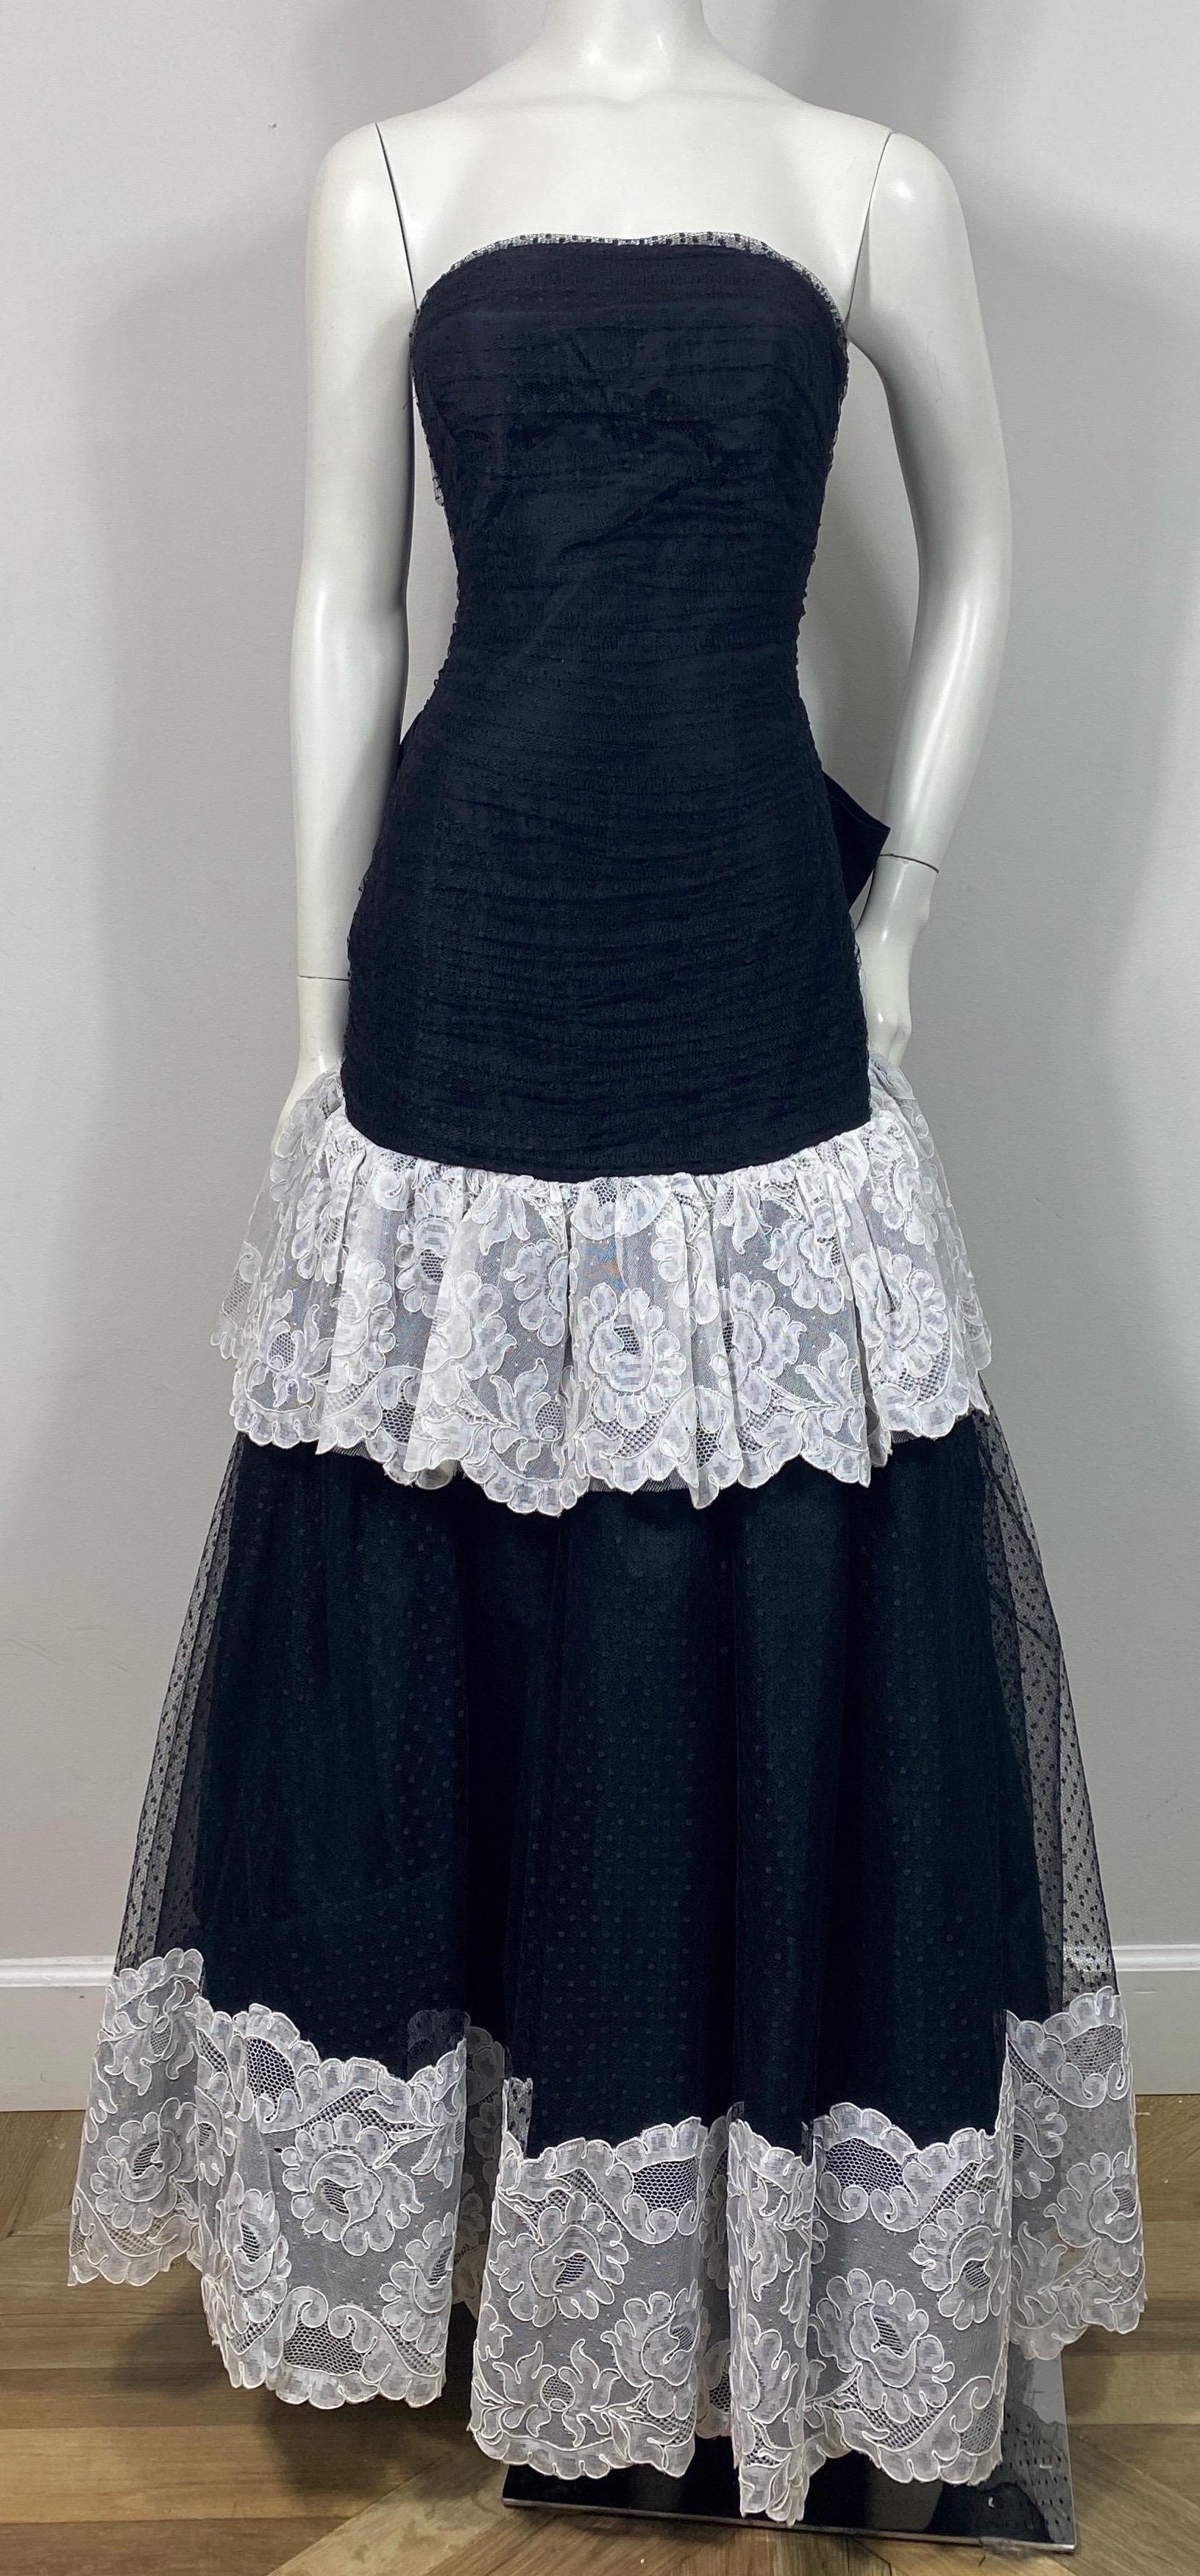 Bellville Sassoon Fin des années 1980 Robe à point d'esprit noir et blanc - Taille 8  Cette robe vintage de la fin des années 80 au début des années 90 est composée d'un point d'esprit noir qui est garni de dentelle blanche. Le haut de la robe sans